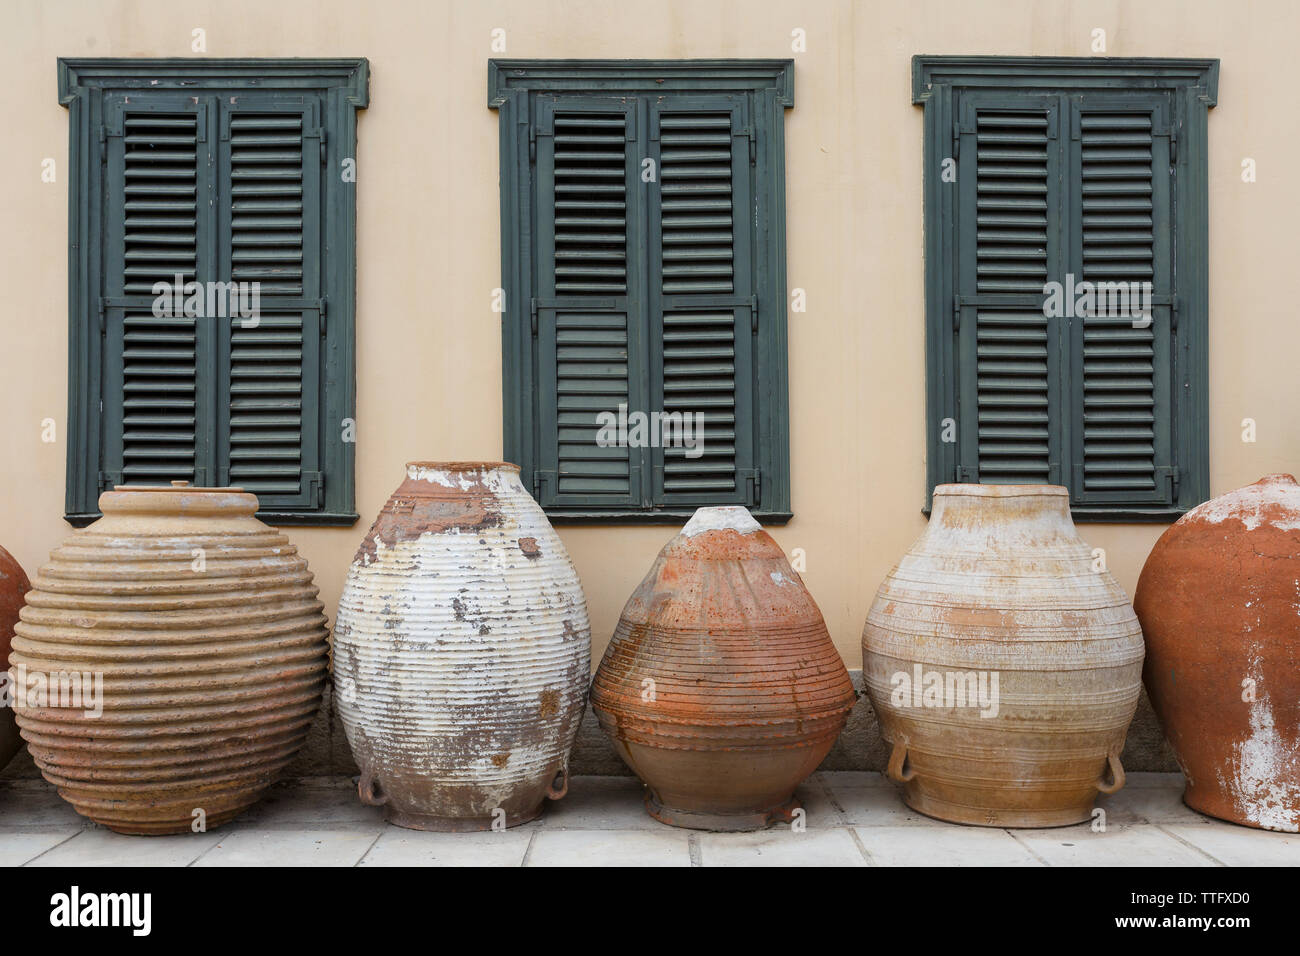 Recipientes de cerámica en la fachada del edificio en Atenas. Foto de stock